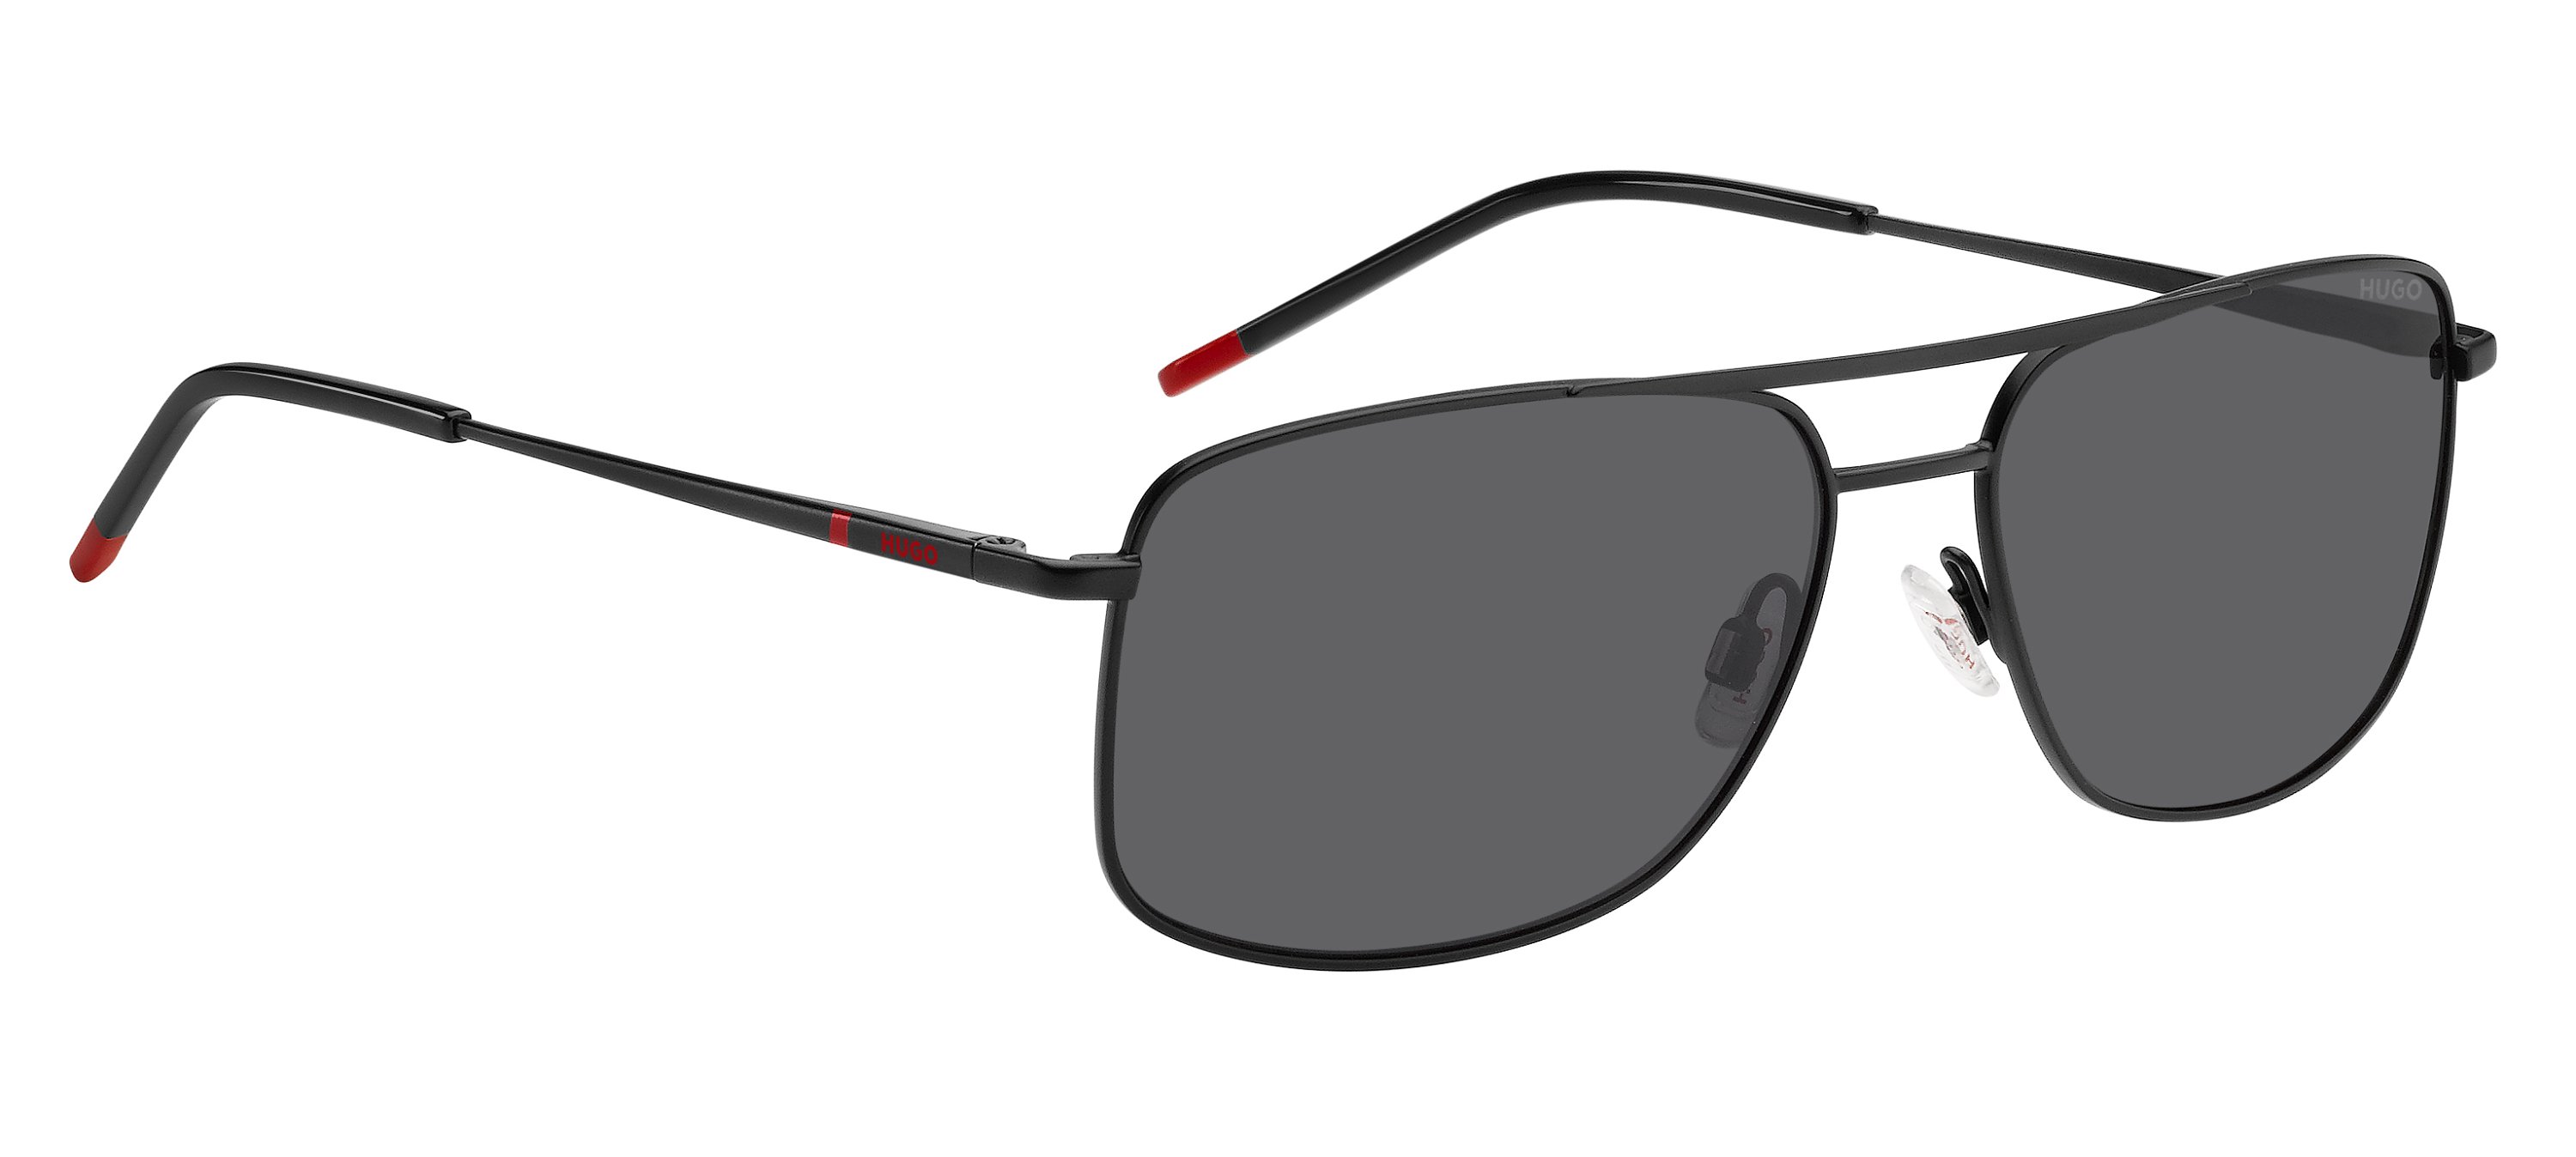 Das Bild zeigt die Sonnenbrille HG1287/S OIT von der Marke Hugo in schwarz/rot.